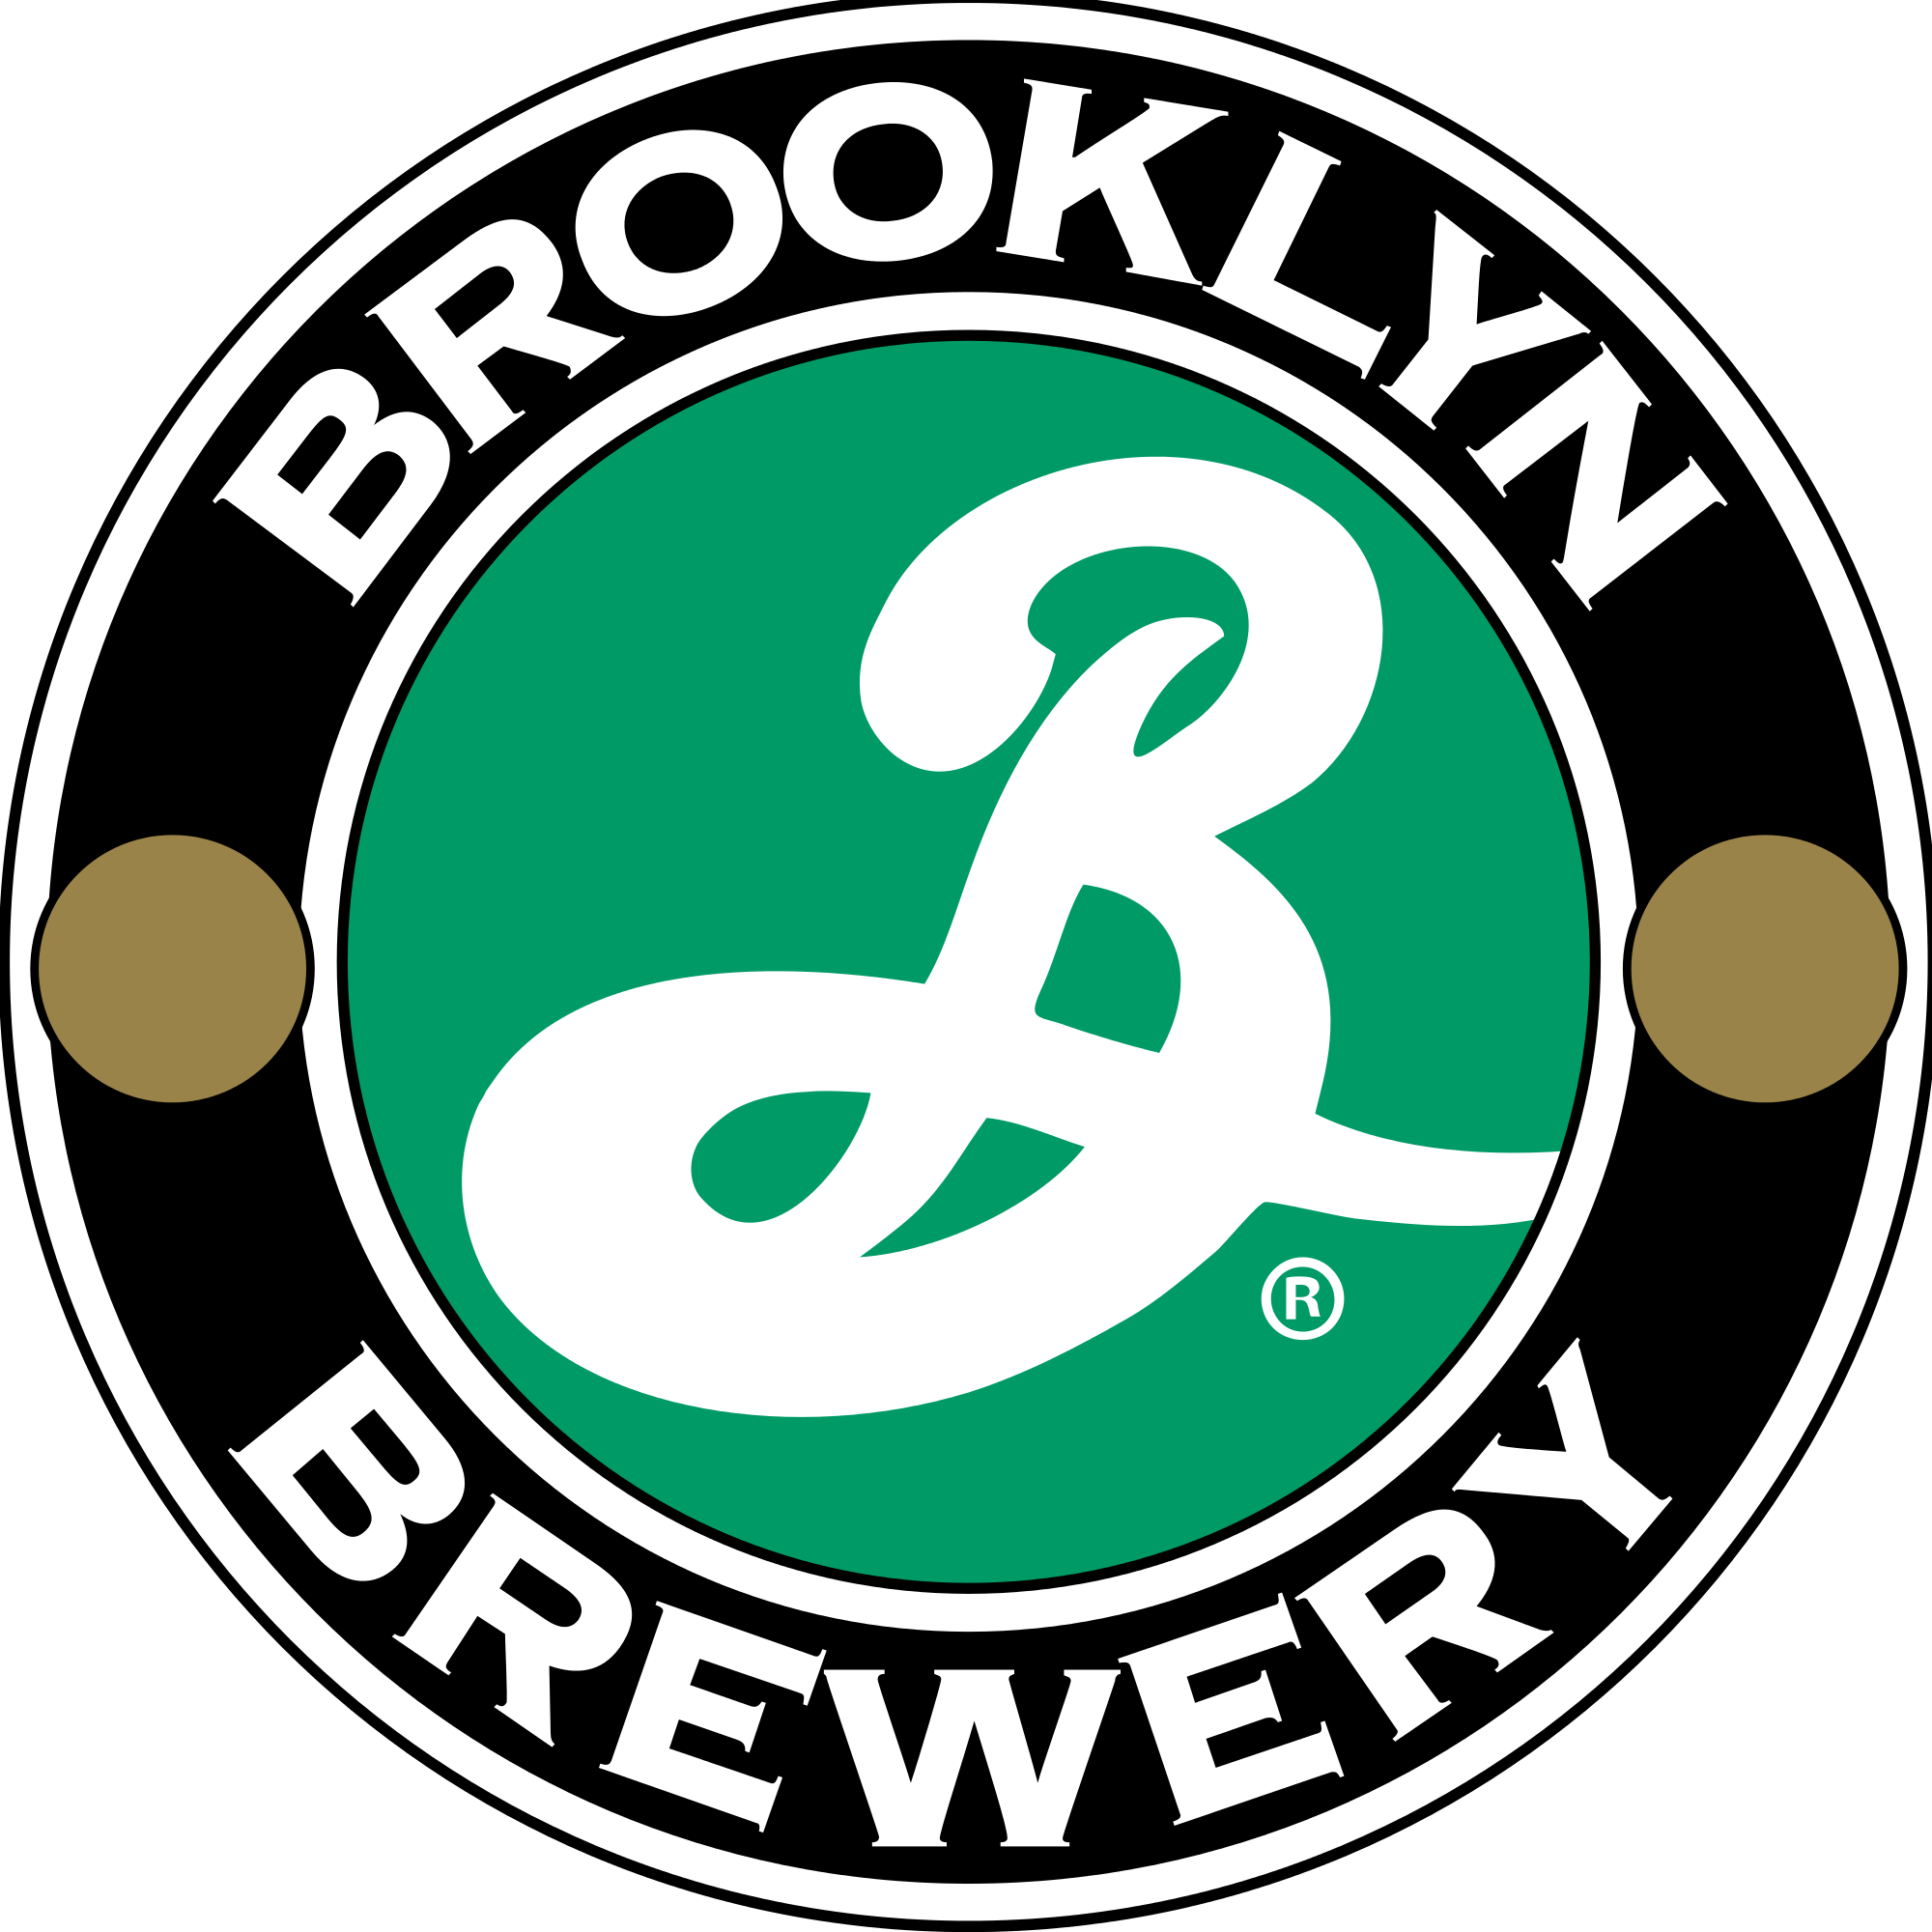 The Brooklyn Brewery